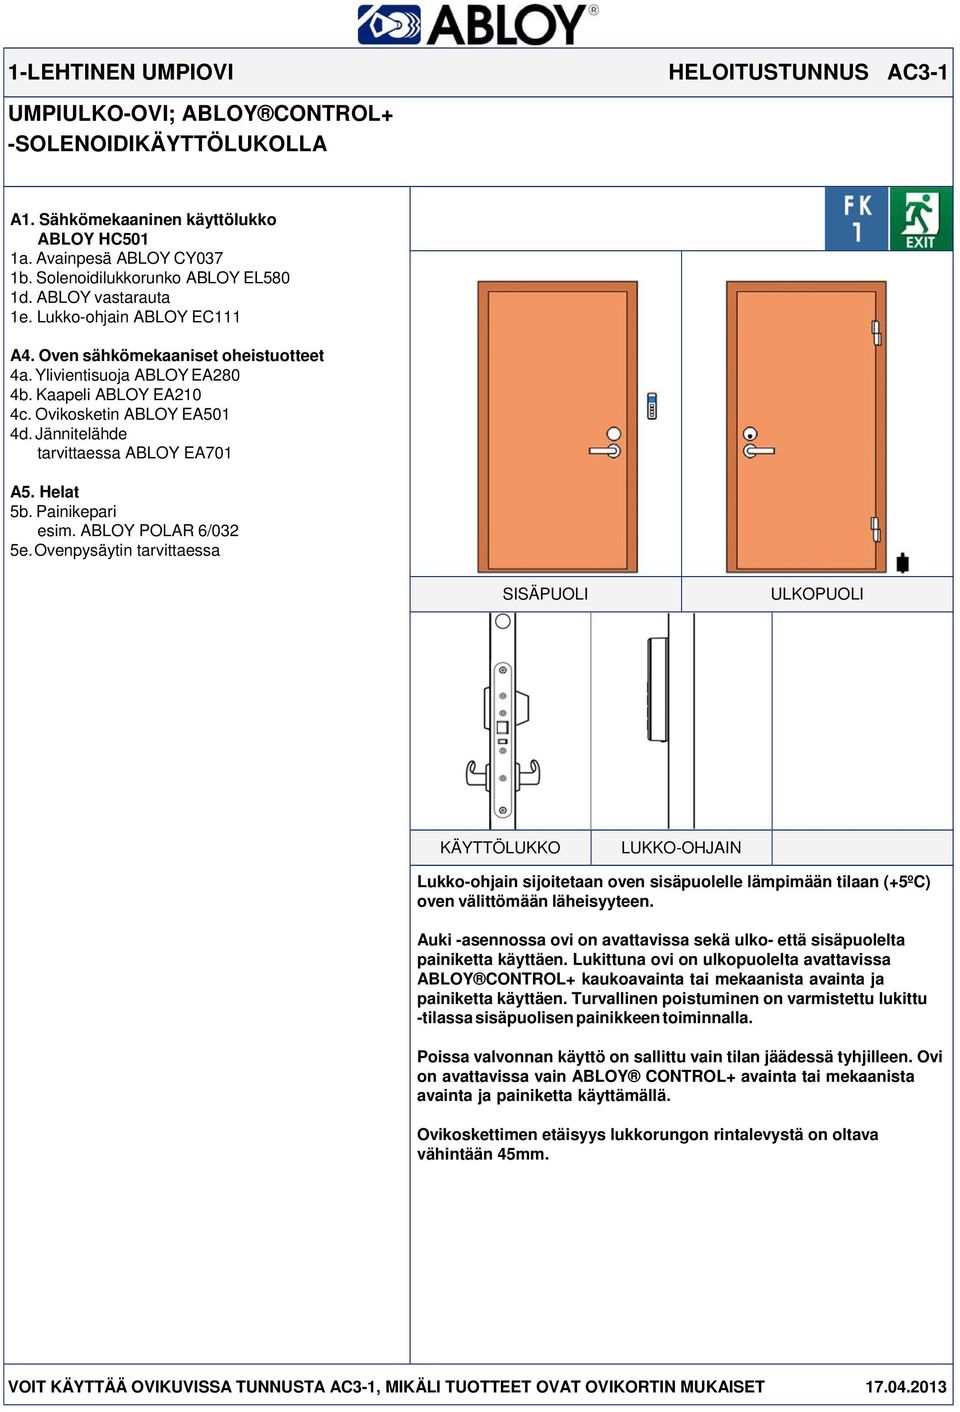 Painikepari esim. ABLOY POLAR 6/032 LUKKO-OHJAIN Lukko-ohjain sijoitetaan oven sisäpuolelle lämpimään tilaan (+5ºC) oven välittömään läheisyyteen.